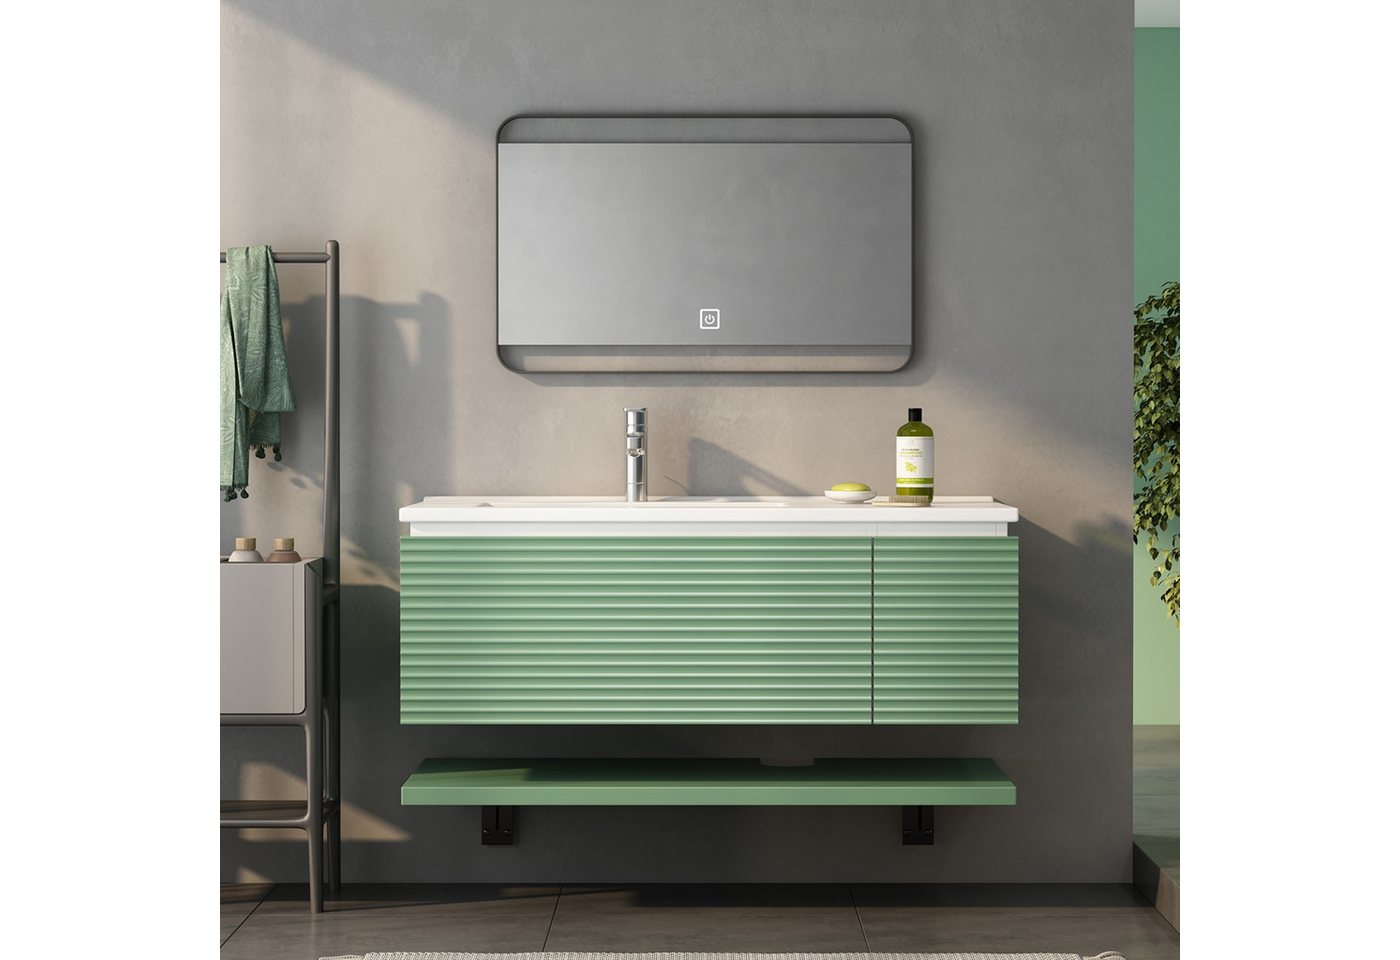 IDEASY Badmöbel-Set Badezimmermöbel, Waschbecken 90 cm breit, grün, mit 1 Schublade, (wasserfest und langlebig, kratz- und bruchsicher), leicht zu reinigen (ohne Spiegel) von IDEASY